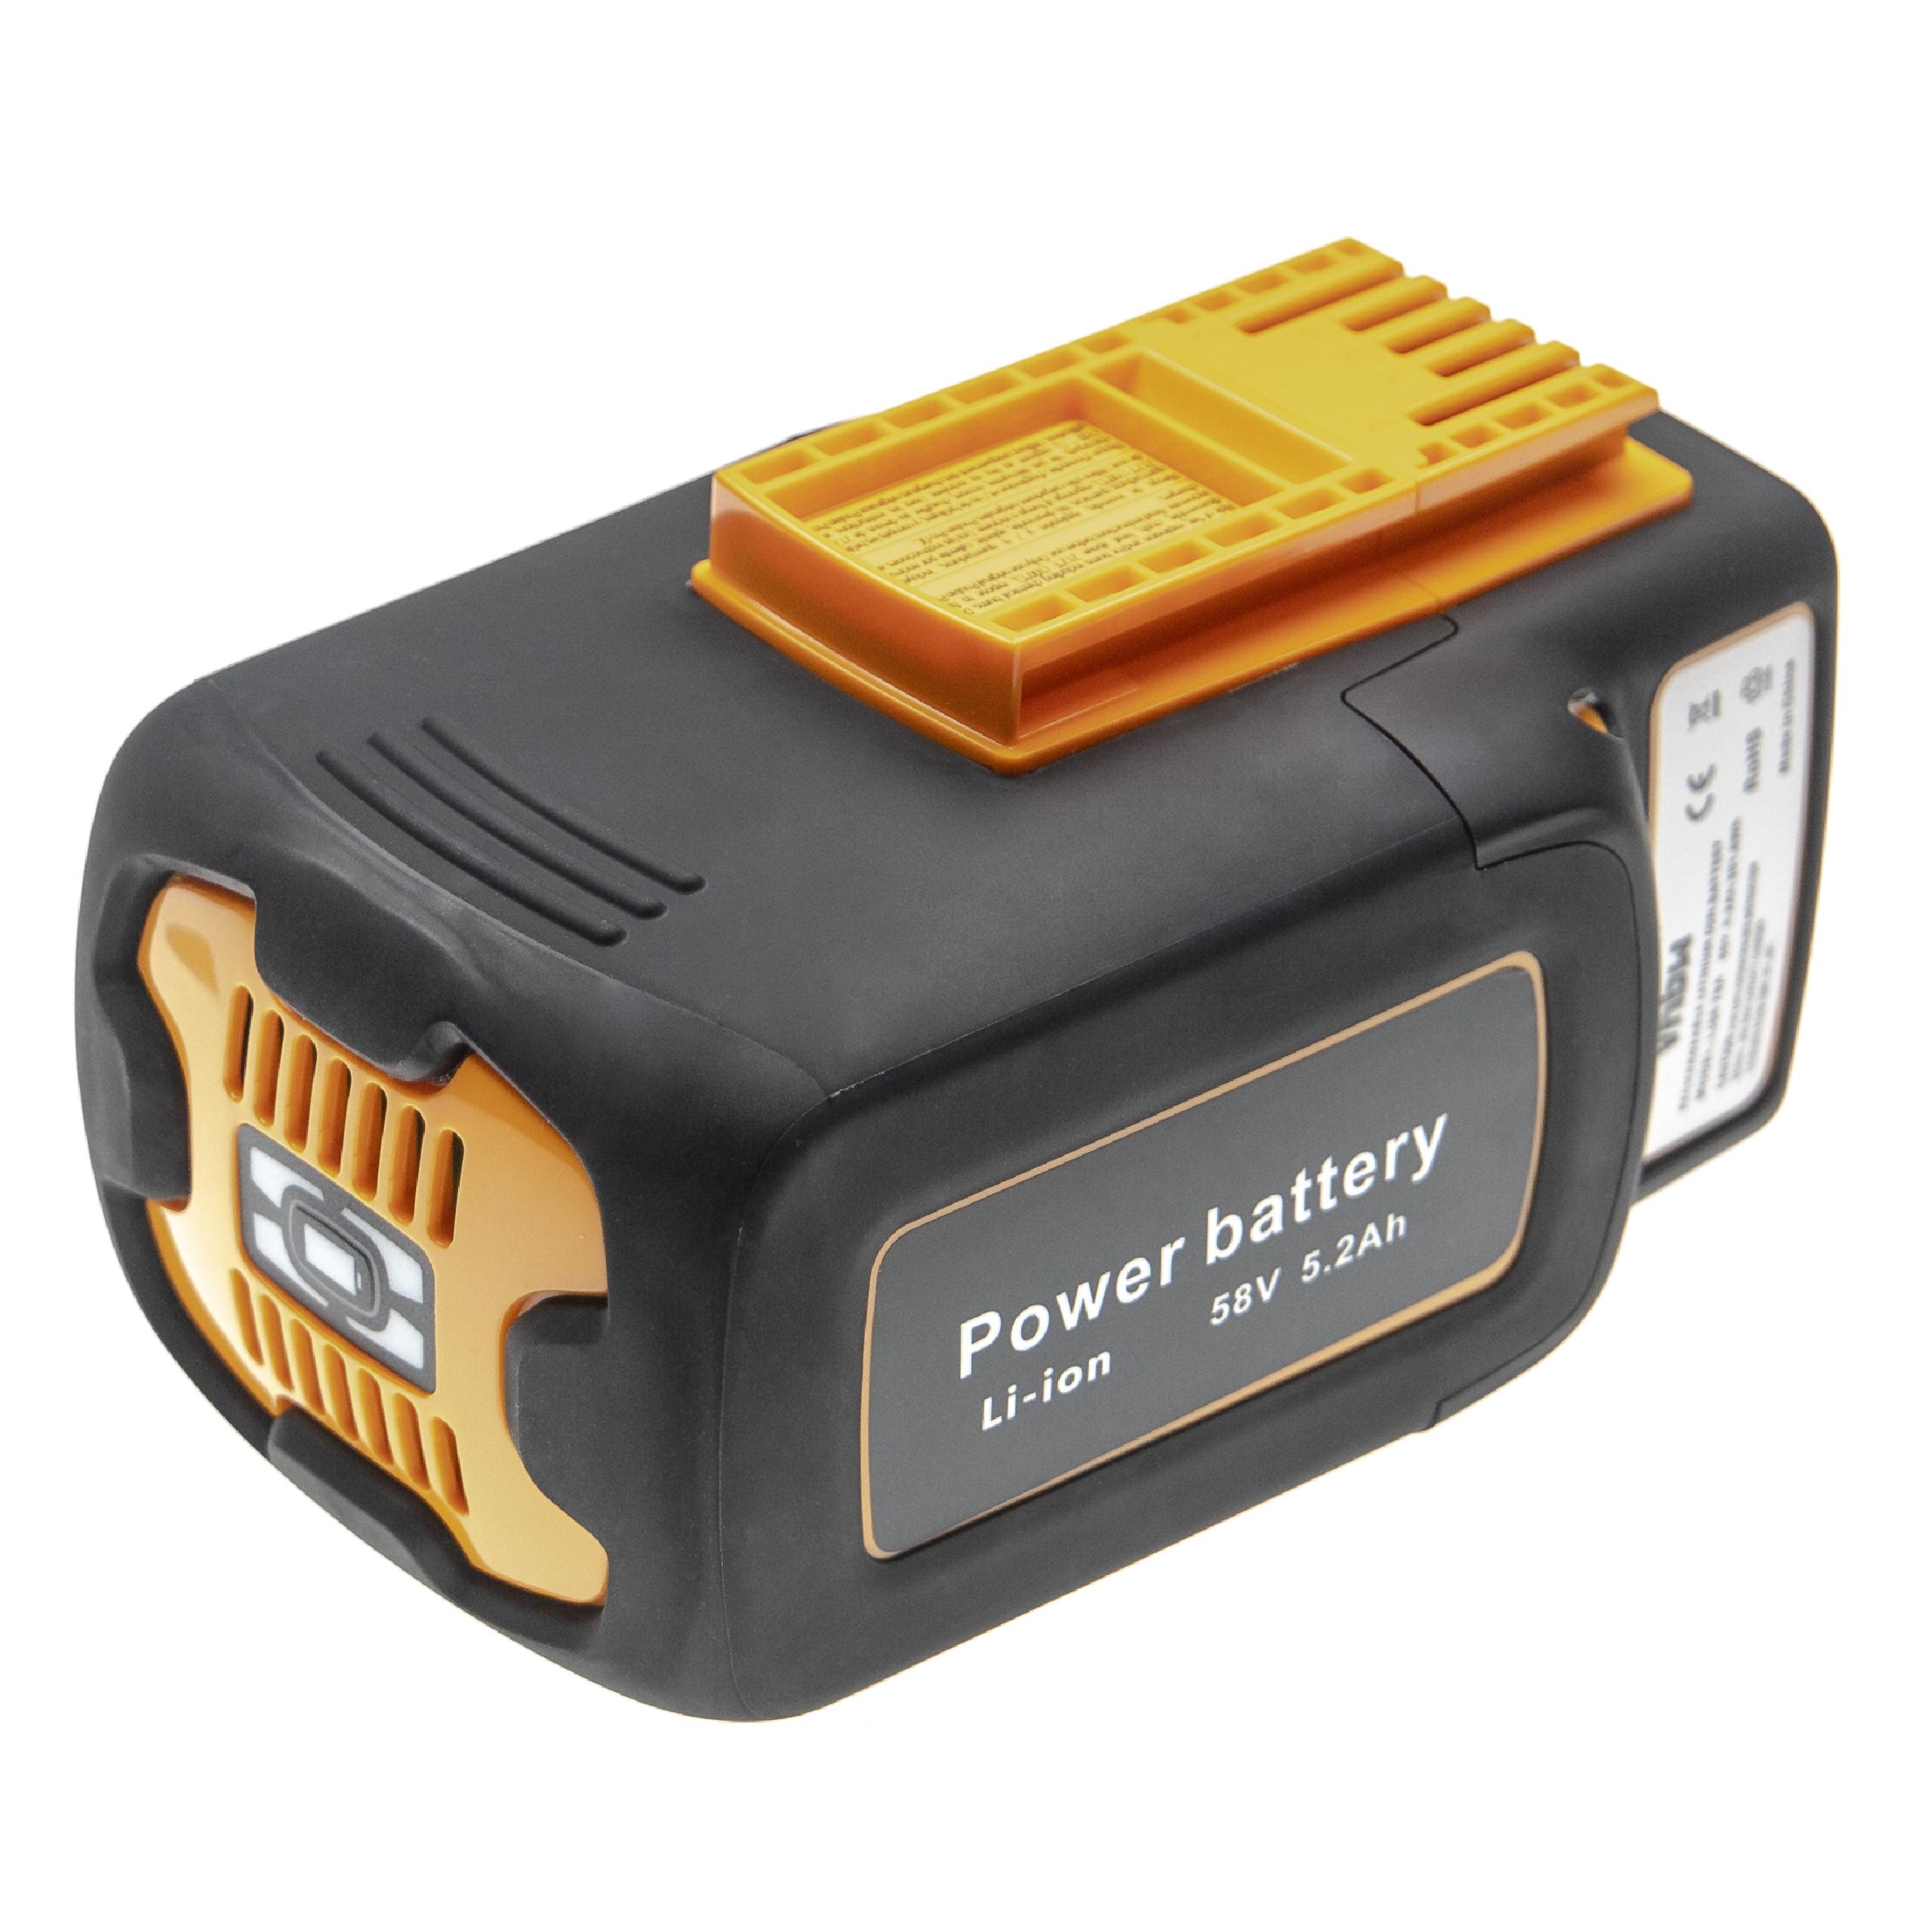 Batterie remplace McCulloch 59-09.238.03, 582611701, 590810401 pour outil électrique - 5200 mAh, 58 V, Li-ion